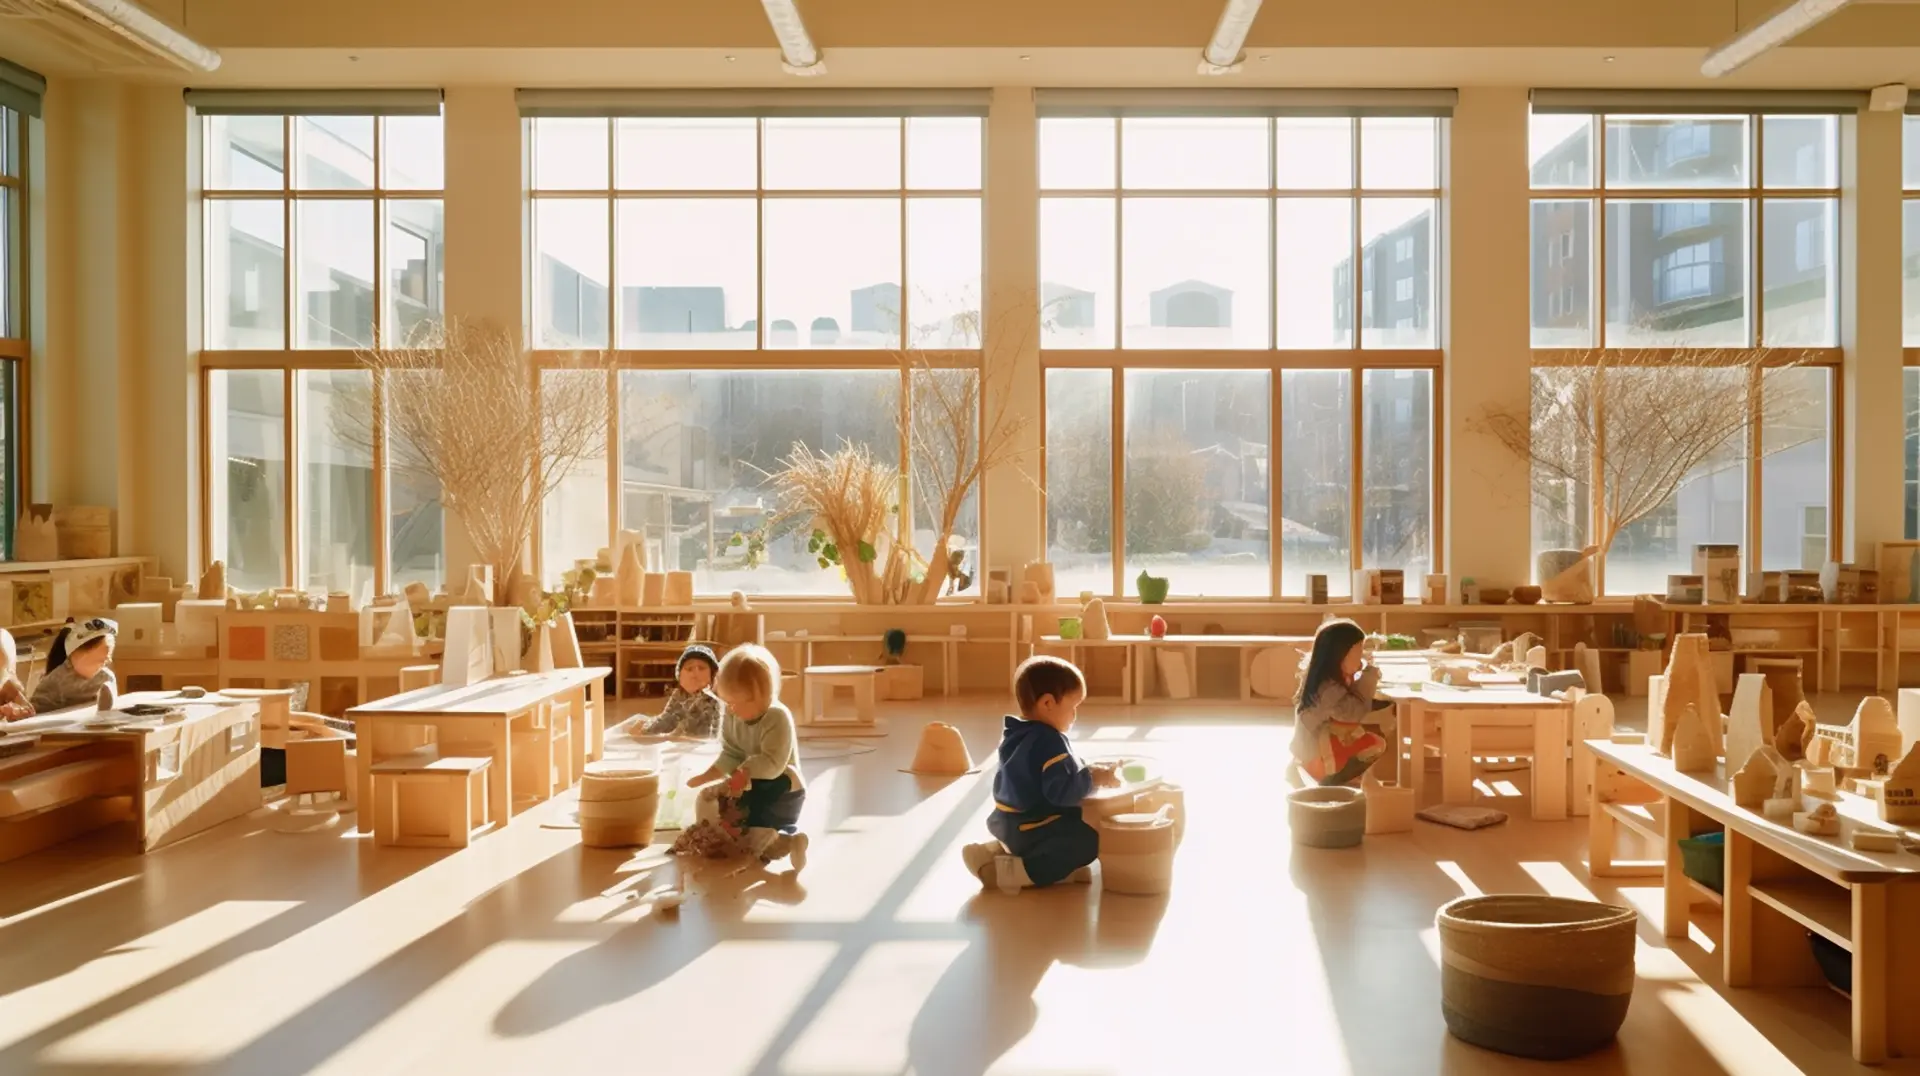 Die Kinder nehmen an einer Montessori-Aktivität in einem mit Holztischen und -stühlen ausgestatteten Raum teil.